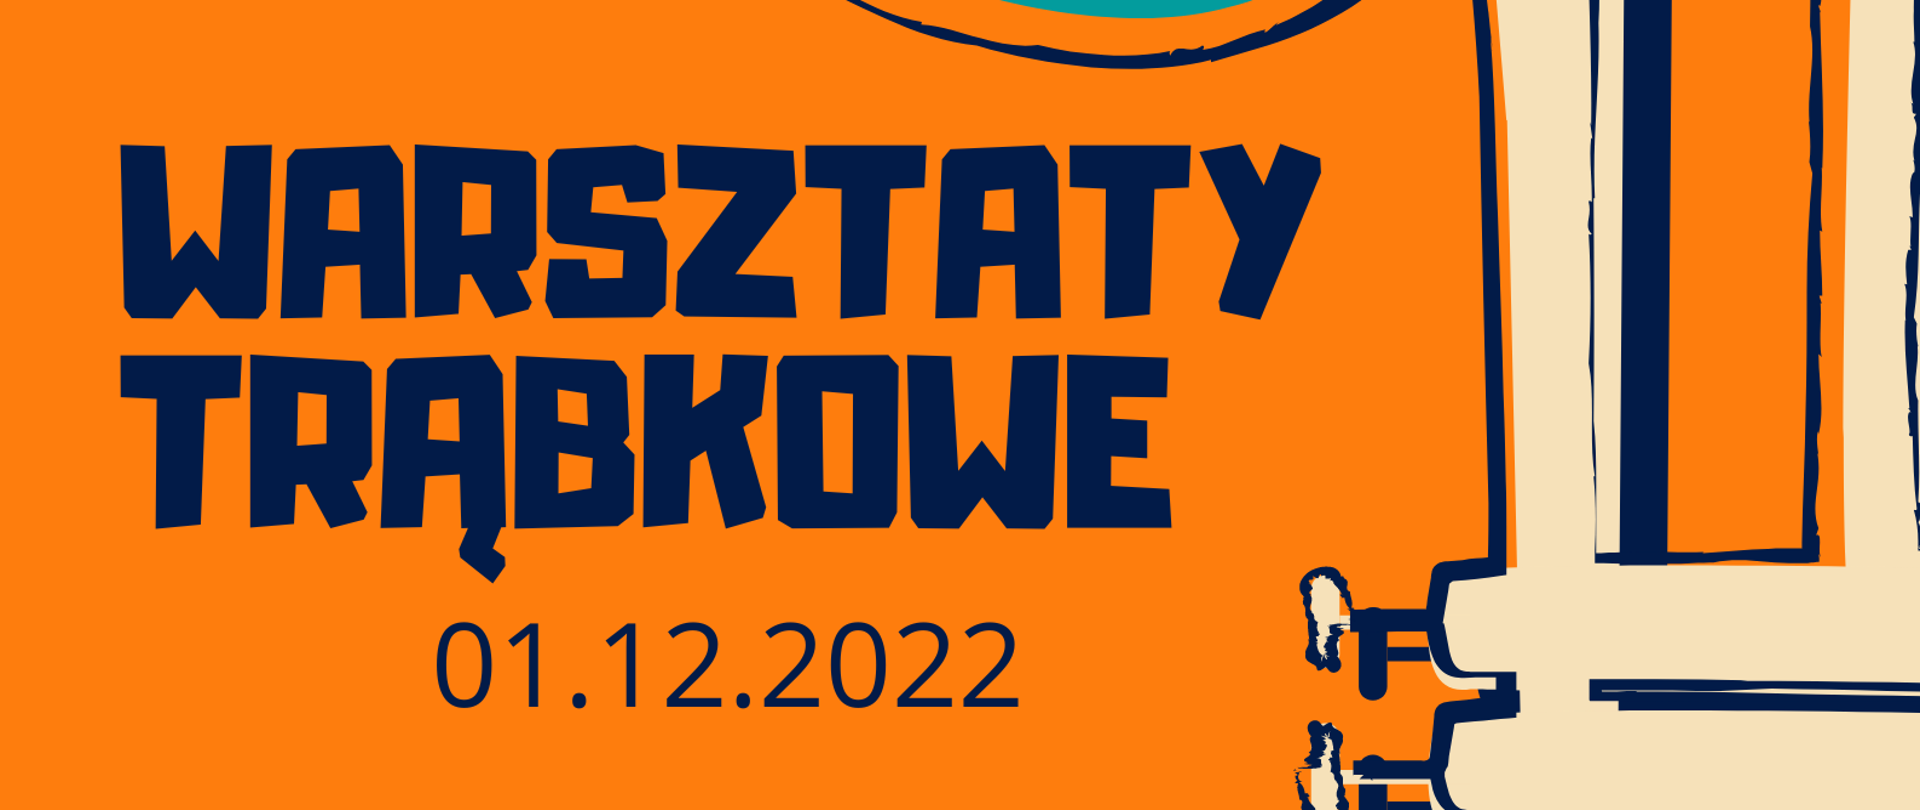 Plakat warsztatów trąbkowych, na pomarańczowym tle ikona trąbki po prawej stronie. Na środku granatowy tekst: warsztaty trąbkowe 01.12.2022